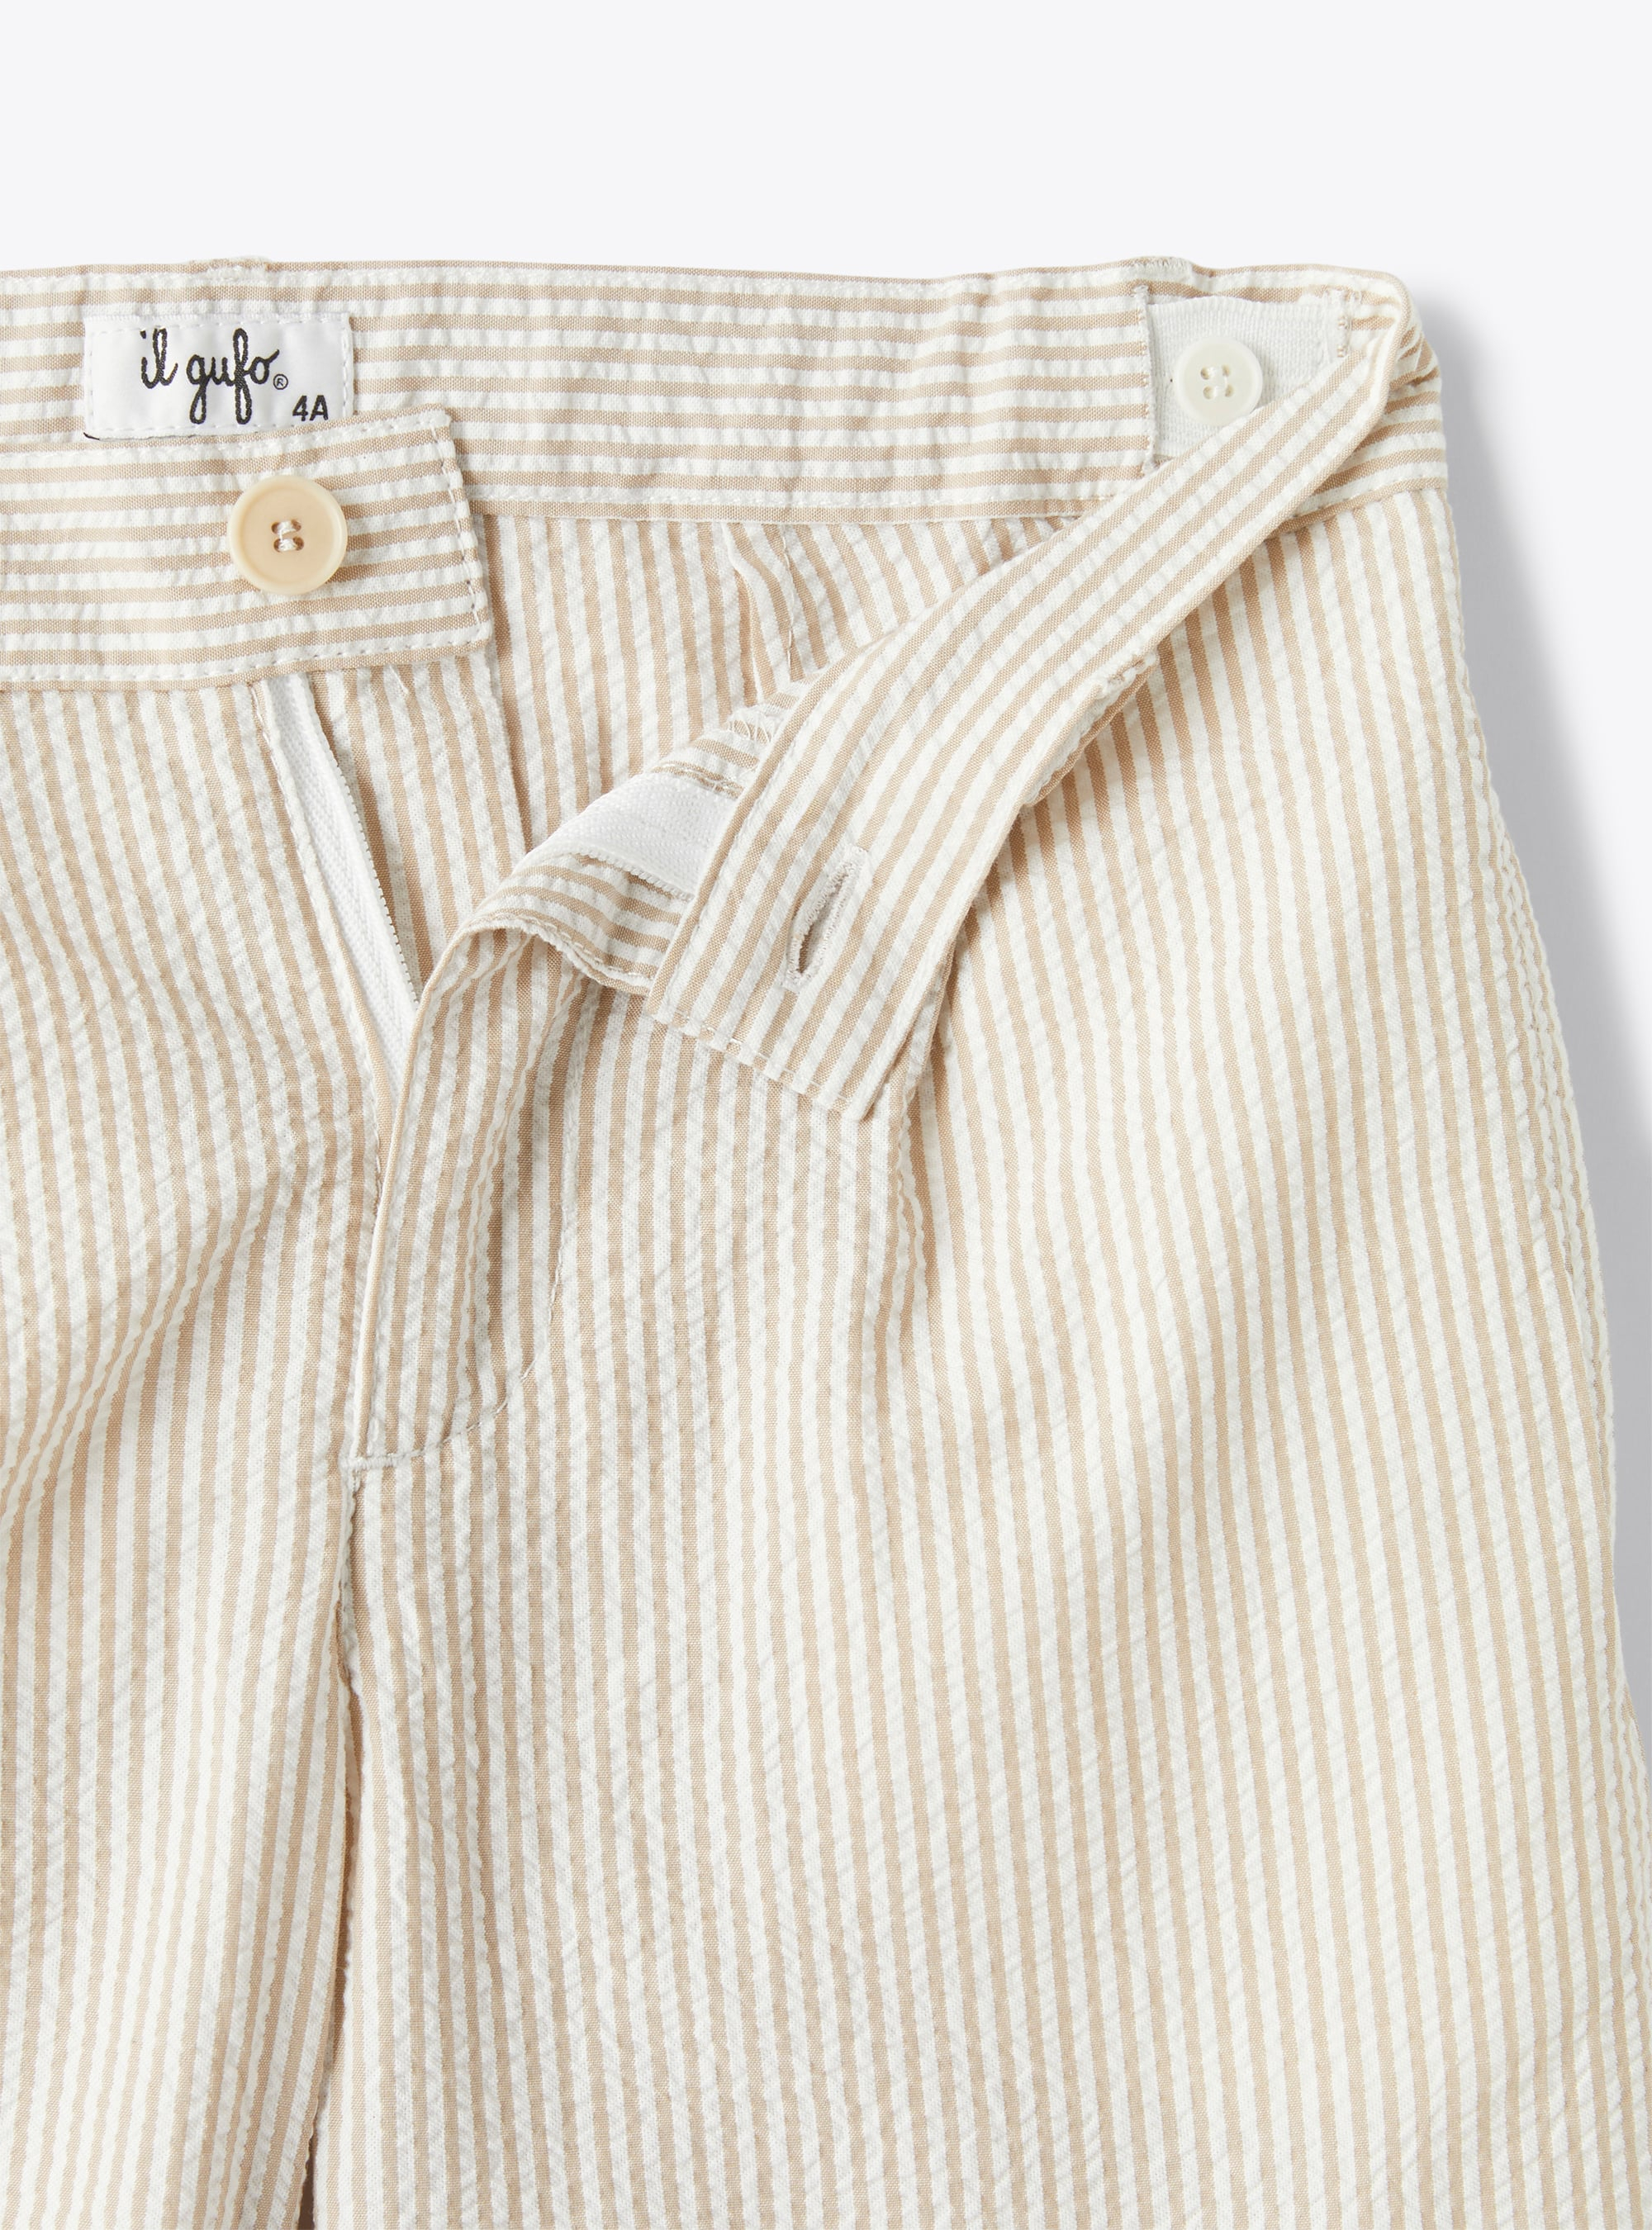 Bermuda shorts in beige-&-white striped seersucker - Beige | Il Gufo